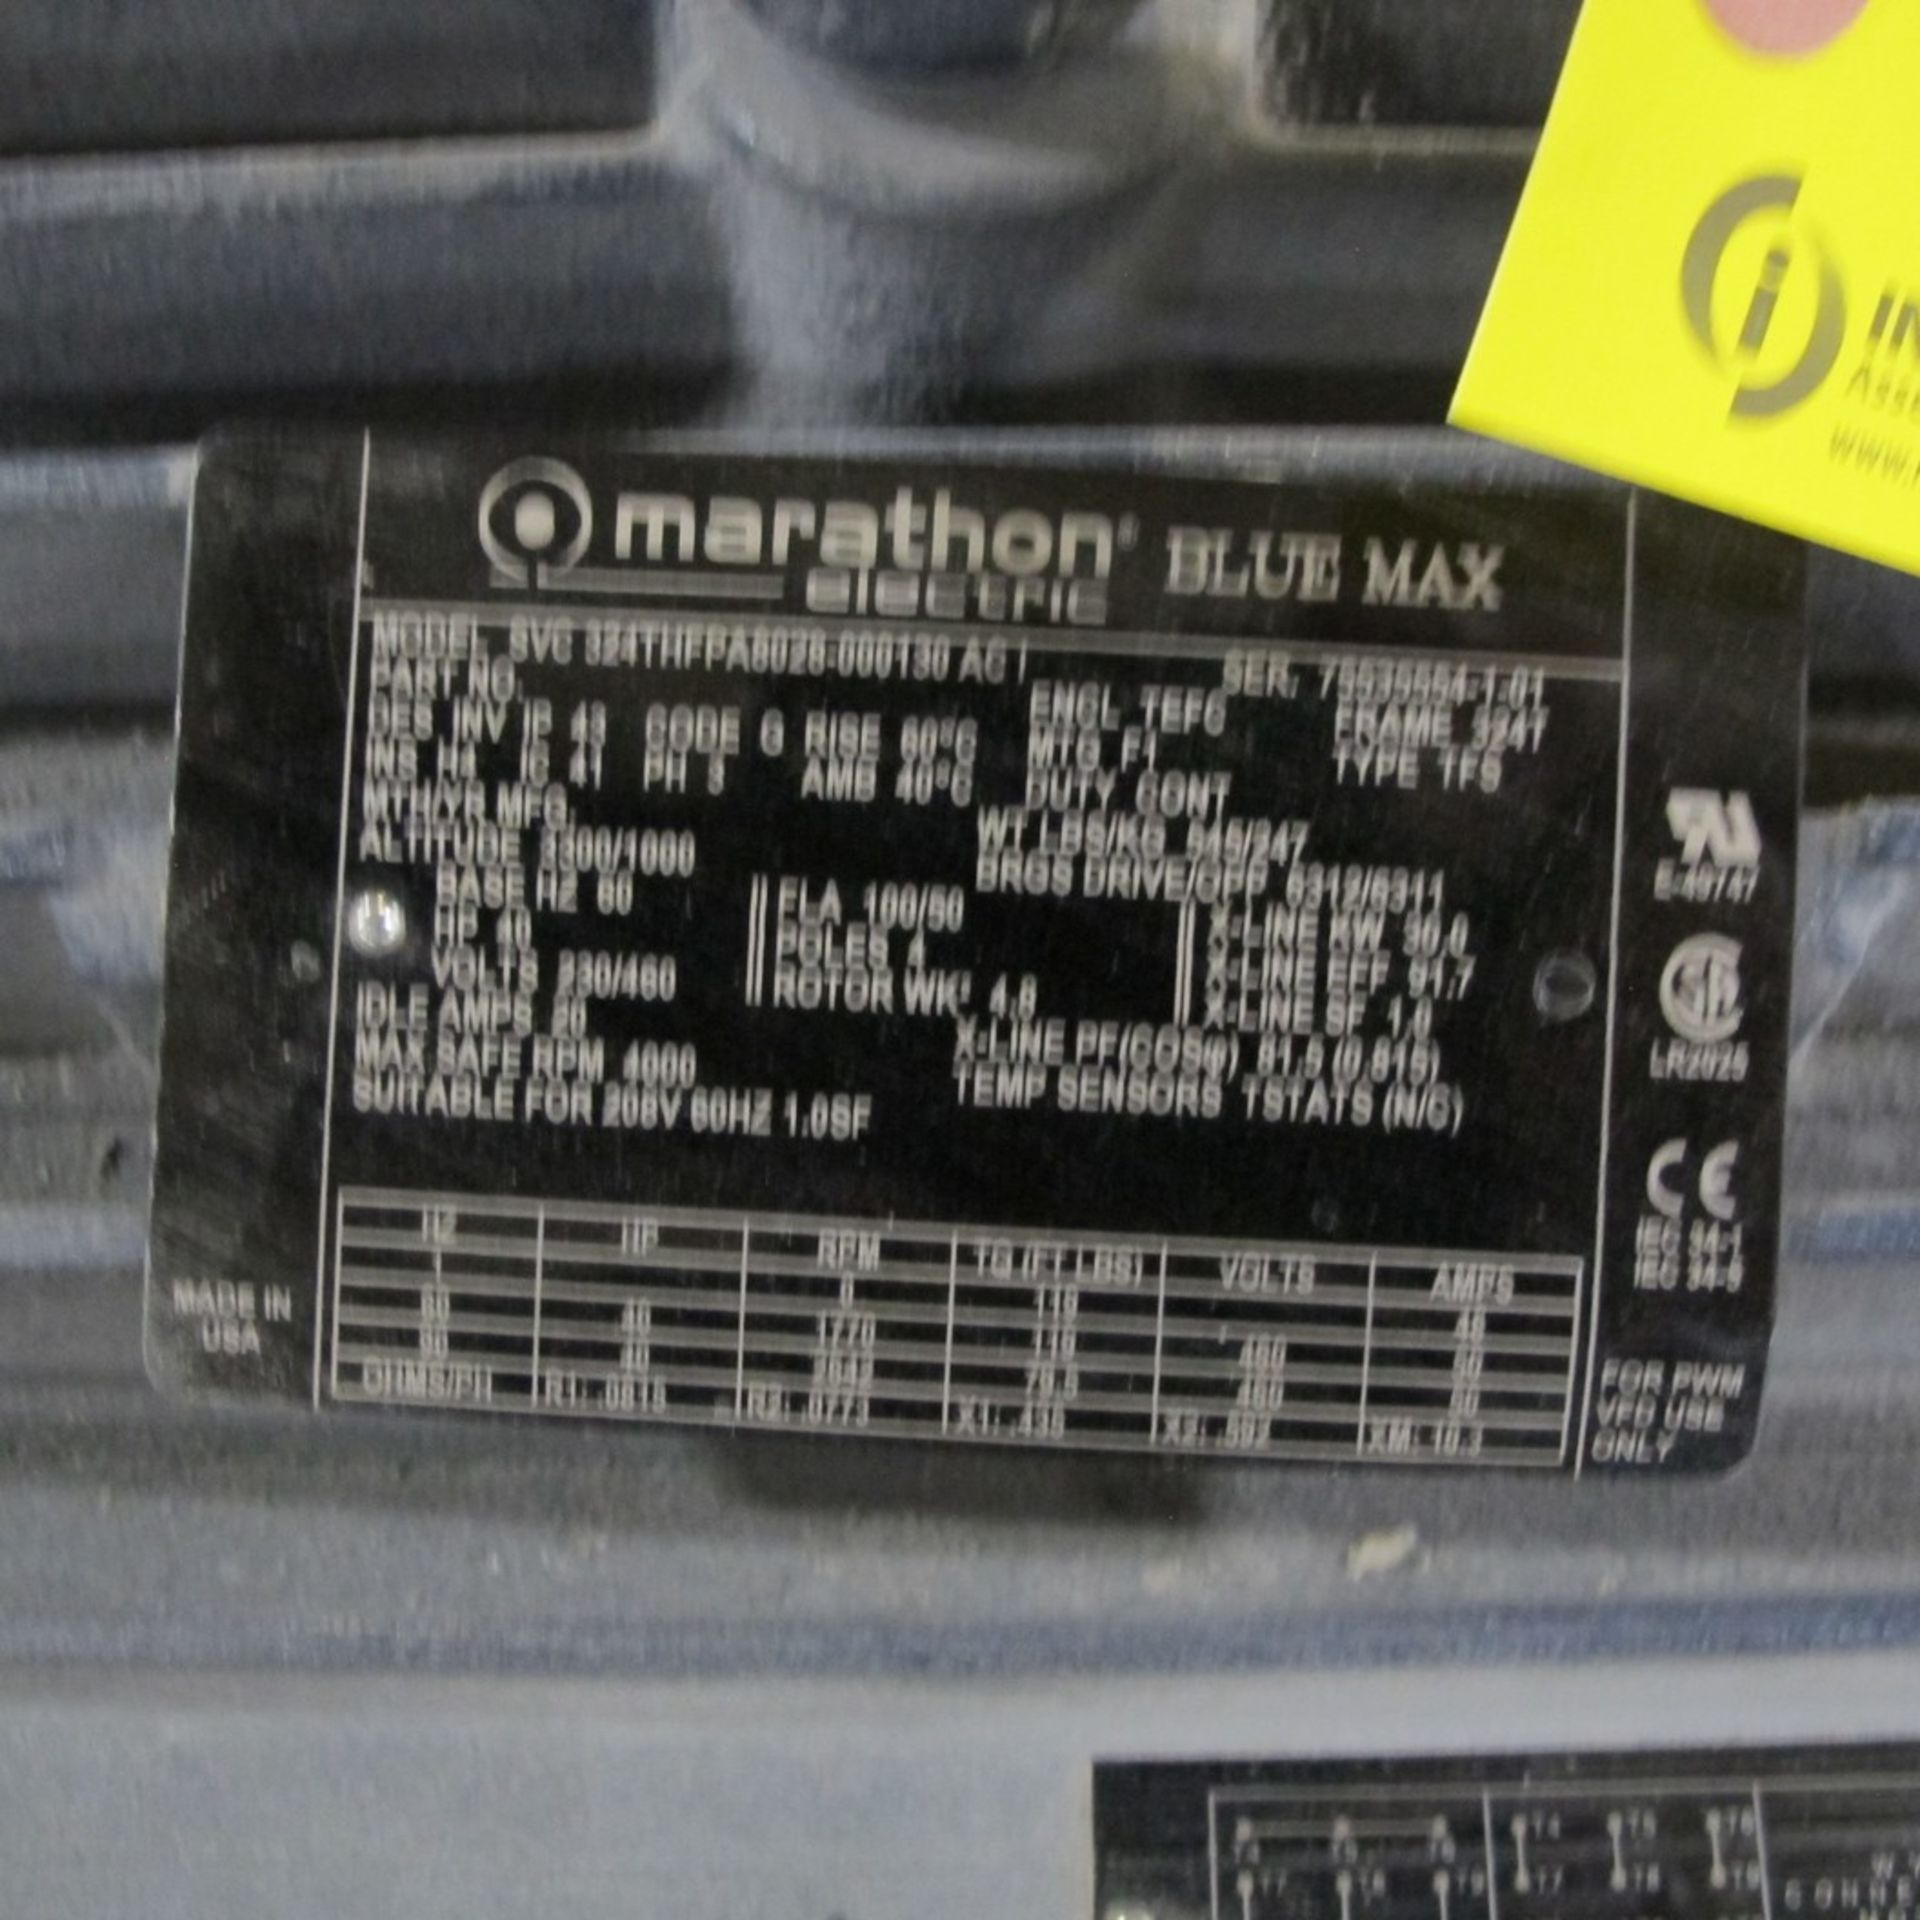 MARATION BLUE MAX MOTOR 40HP, 230/460V, 4,000 RPM, 324T FRAME (WEST CENTER PLANT) - Image 2 of 2